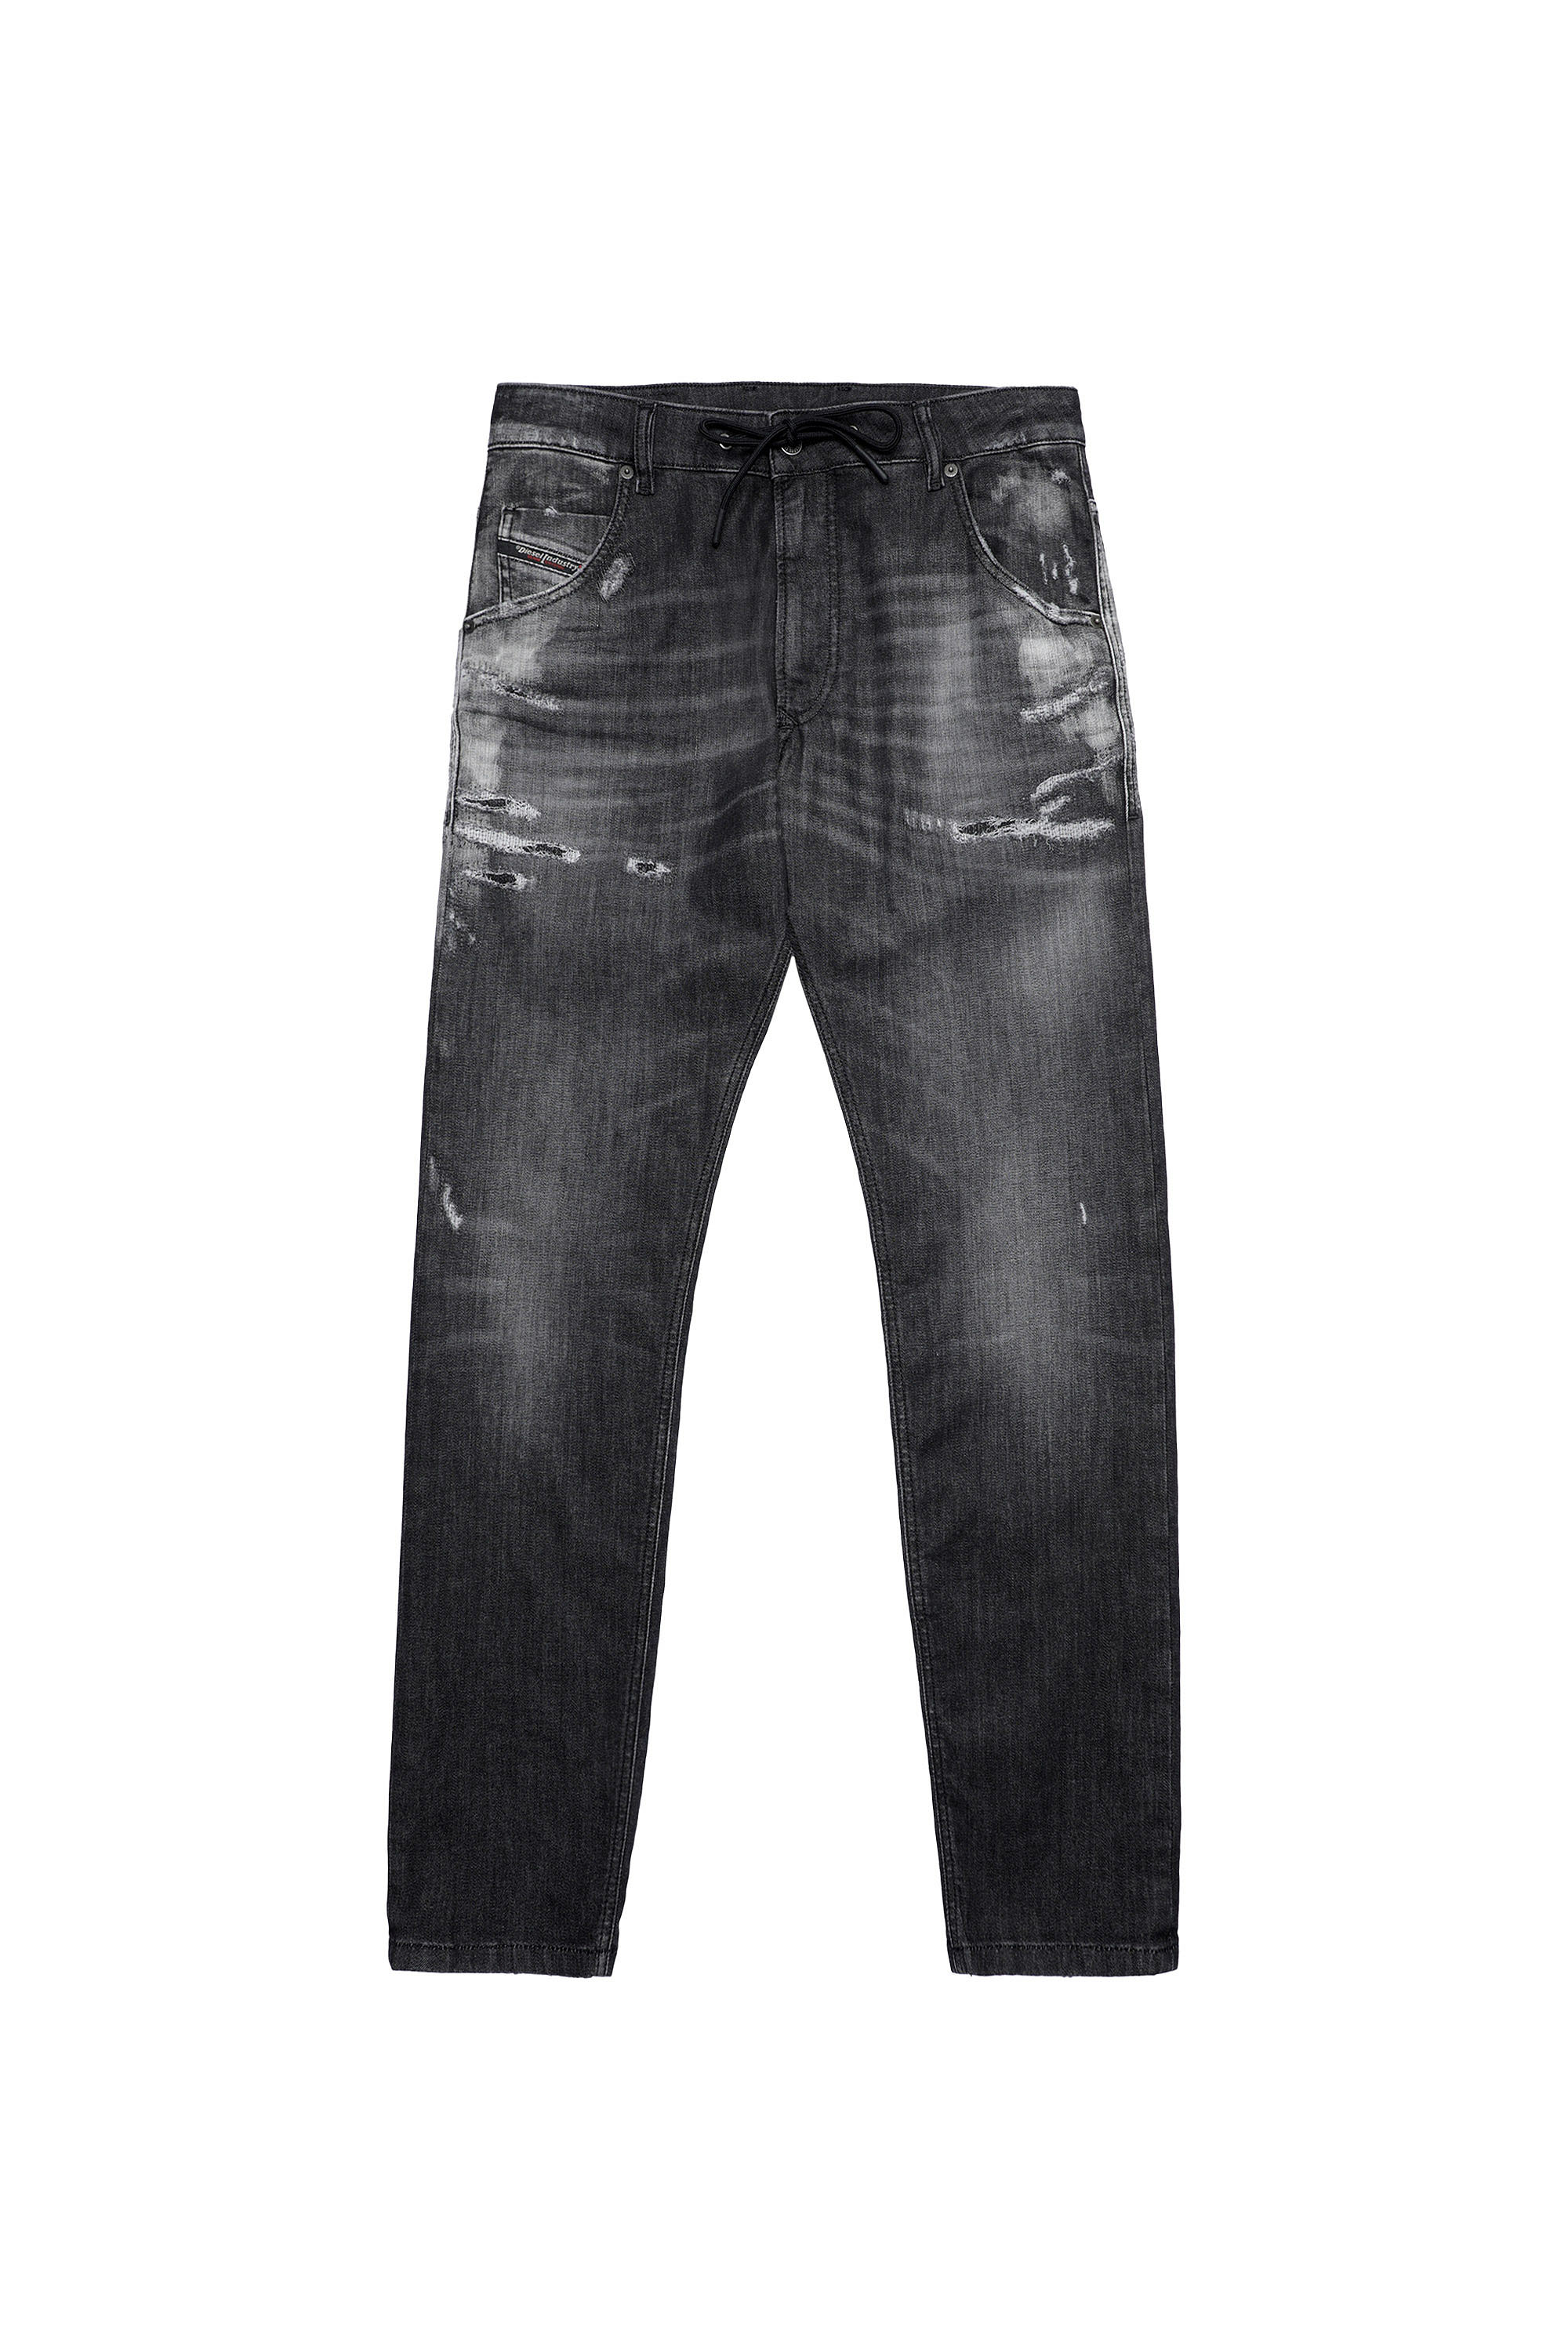 Diesel - Krooley JoggJeans® 09B53 Tapered, Black/Dark Grey - Image 6